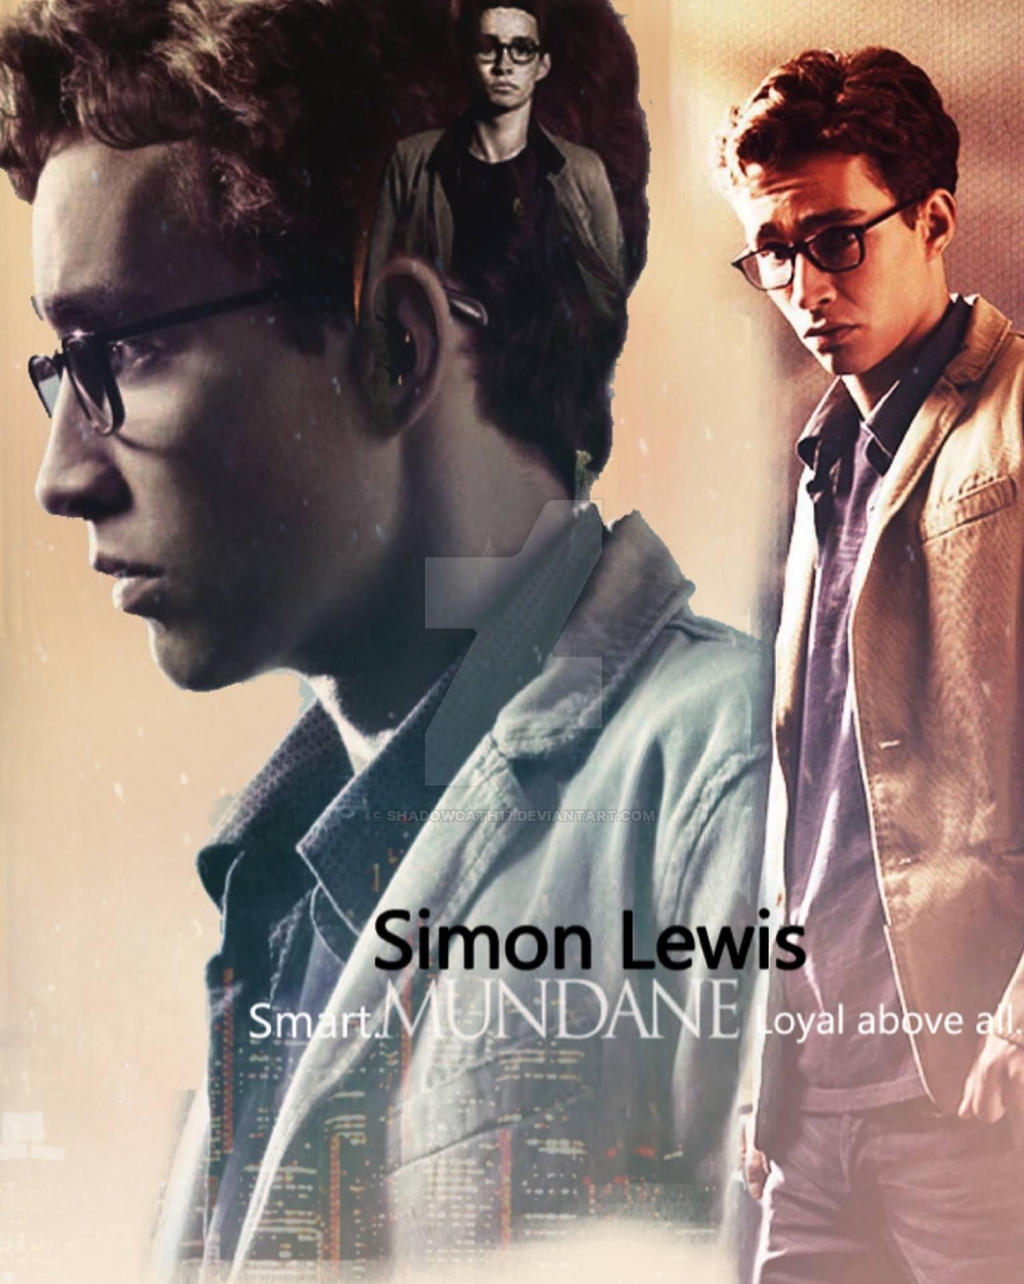 Simon Lewis